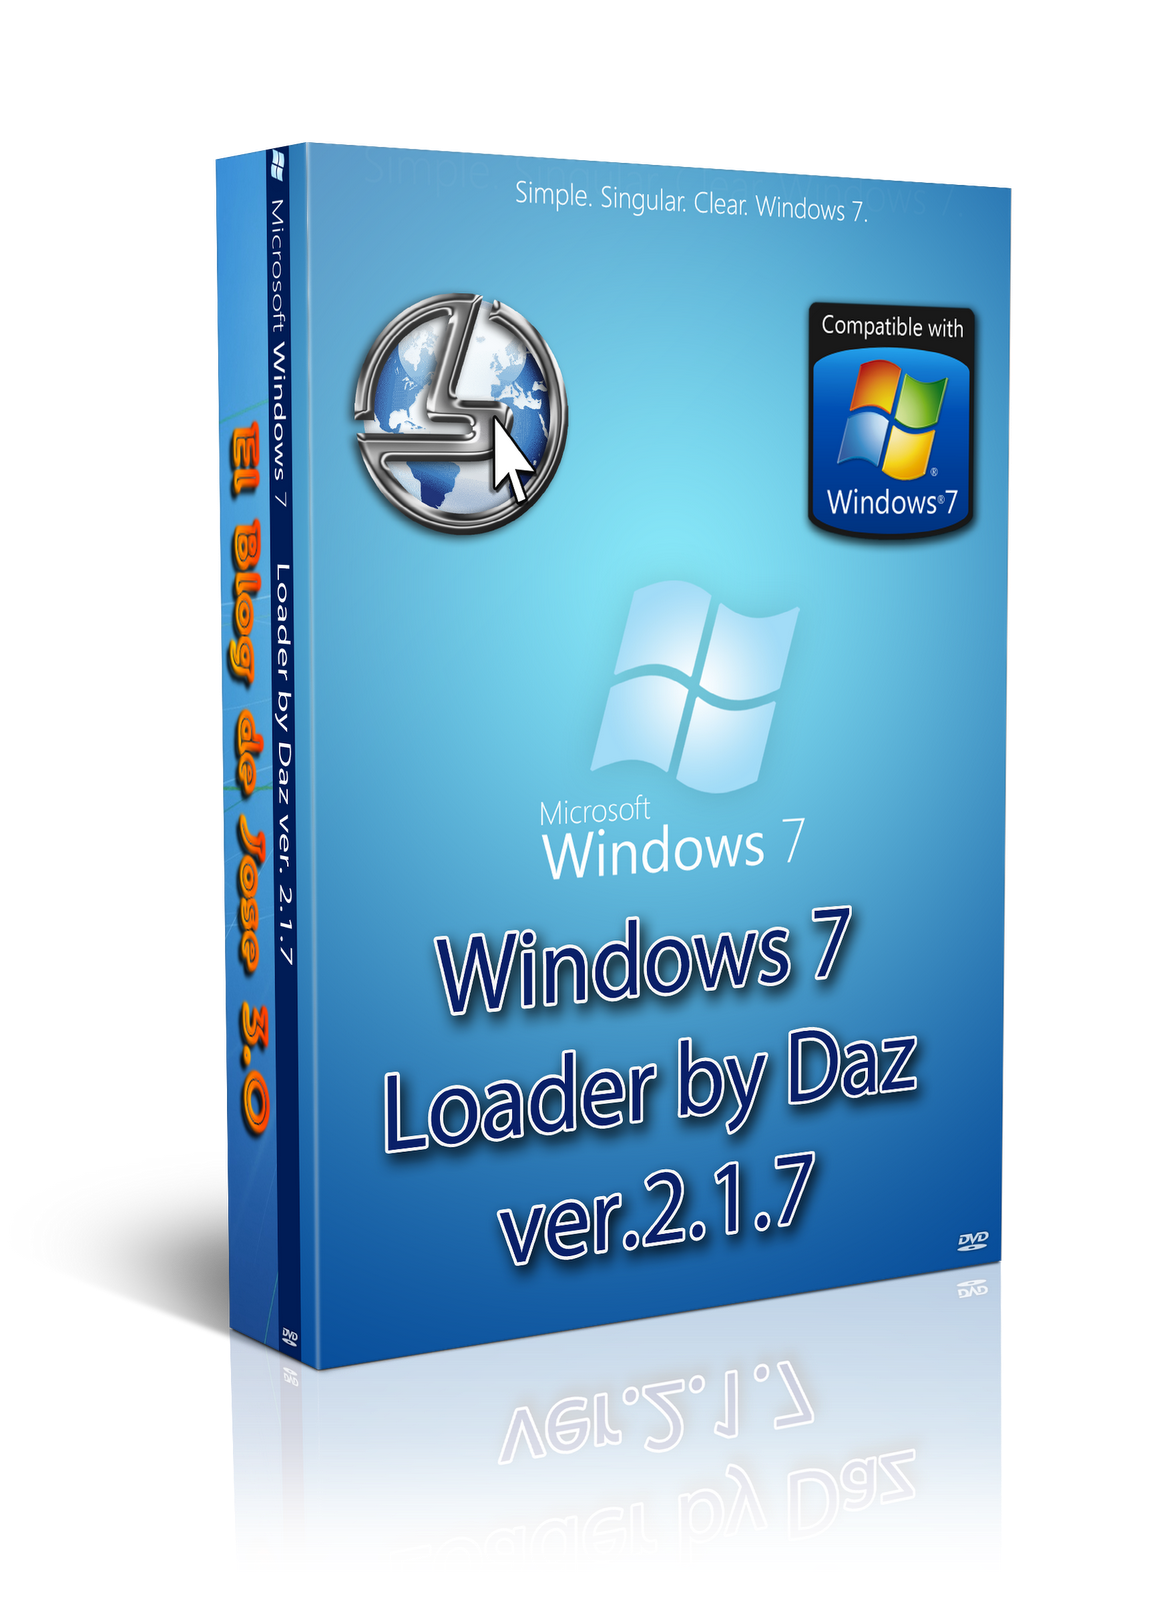 Активатор windows daz. Виндовс лоадер. Windows 7 Loader by Daz. Активатор Windows 7 Loader by Daz. Win 7 активатор Daz.